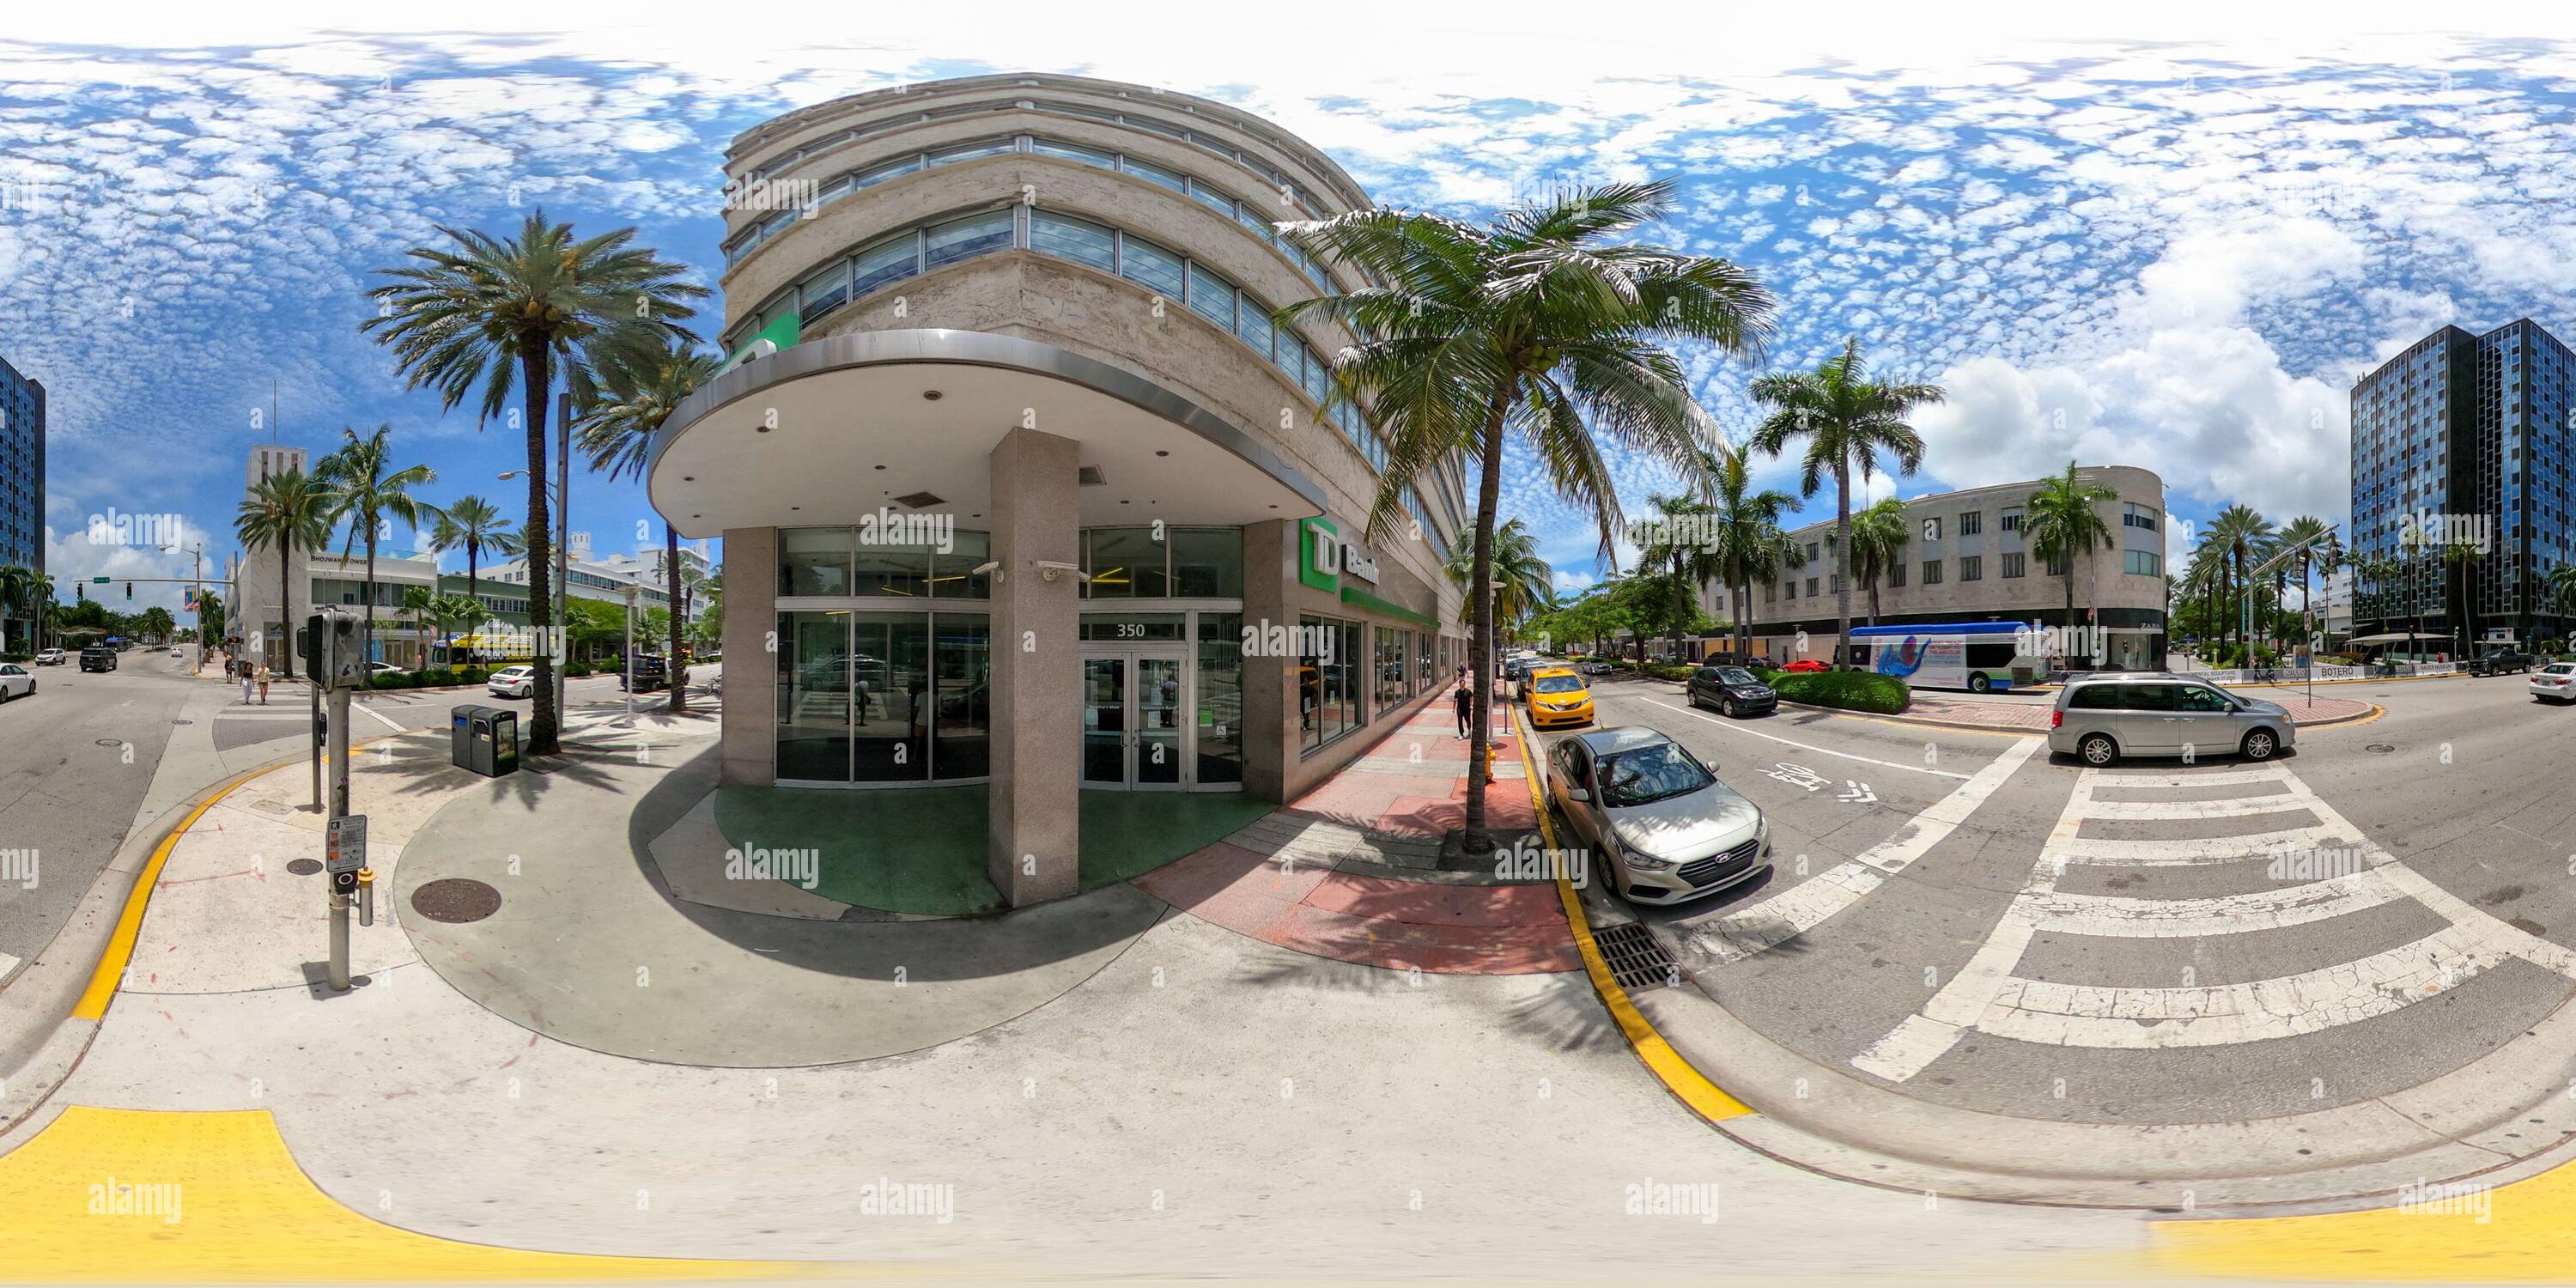 360 Grad Panorama Ansicht von 360 vr Foto Miami Beach TD Bank Building Washington Ave equiprecheckig